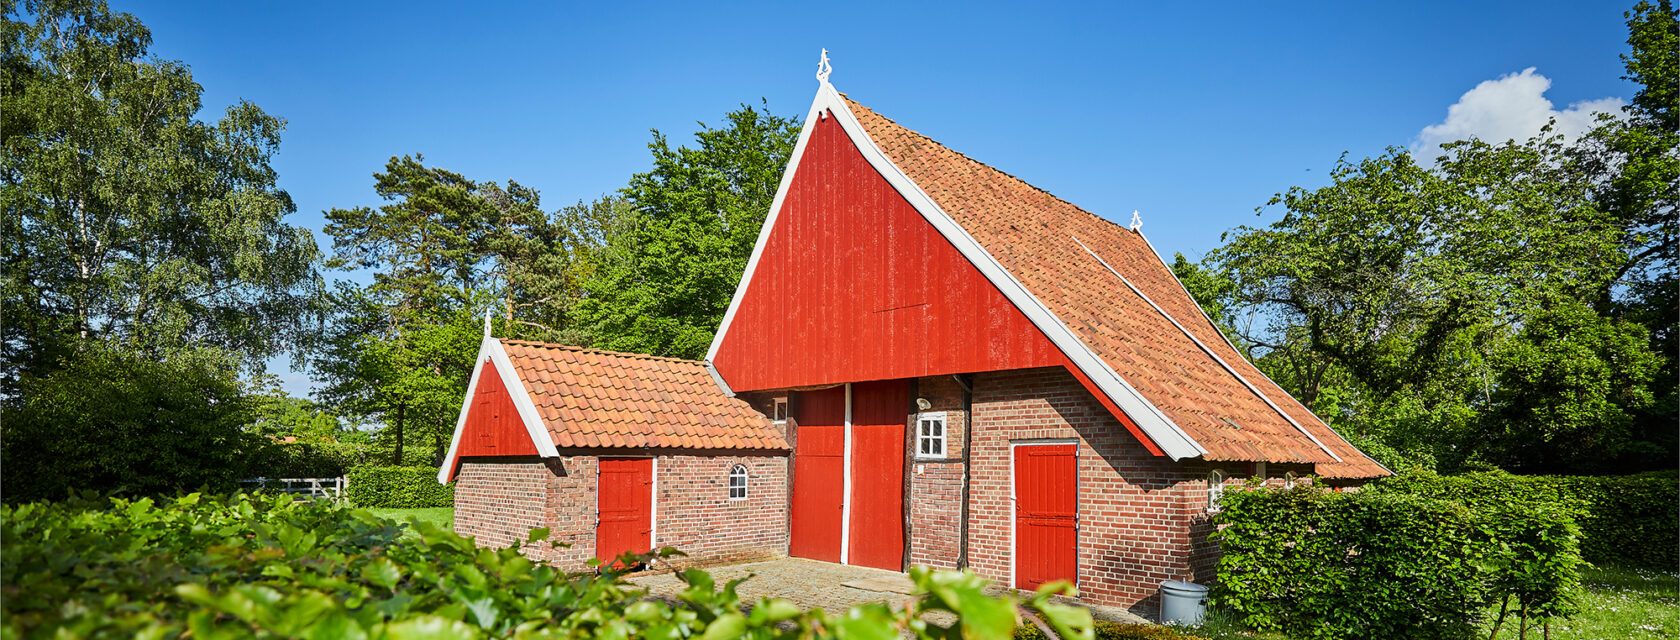 Oude saksische boerderij Erve Brookert bij Reuselink.